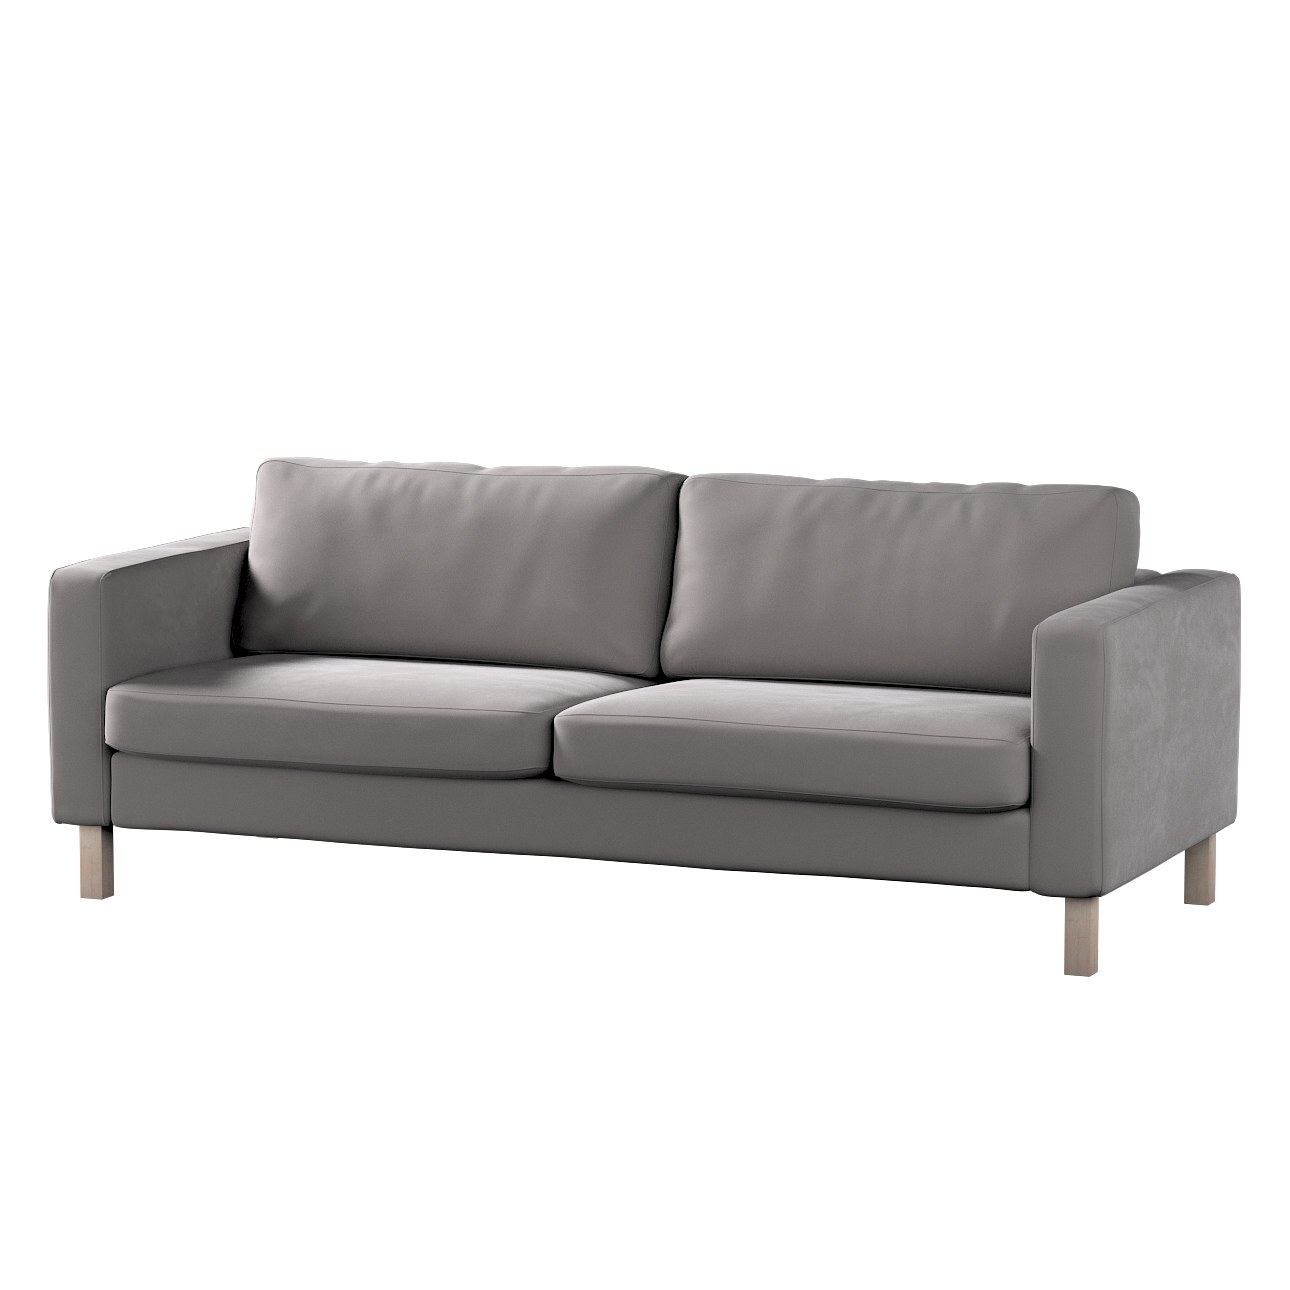 Bezug für Karlstad 3-Sitzer Sofa nicht ausklappbar, kurz, taupengrau, Bezug günstig online kaufen